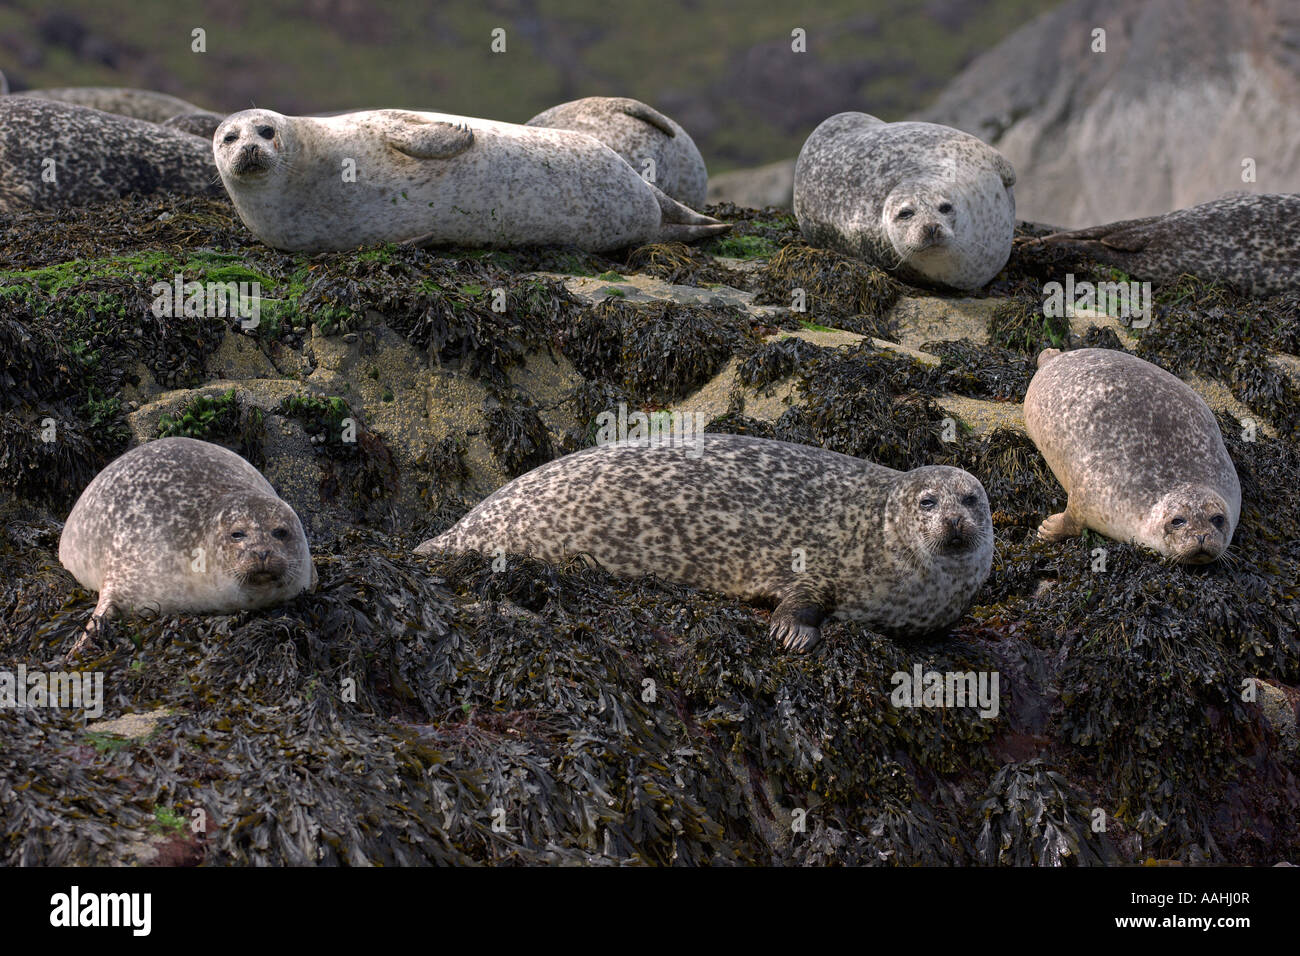 Les phoques communs (Phoca vitulina sur îlot rocheux à l'île de Skye Ecosse Juin 2007 Banque D'Images